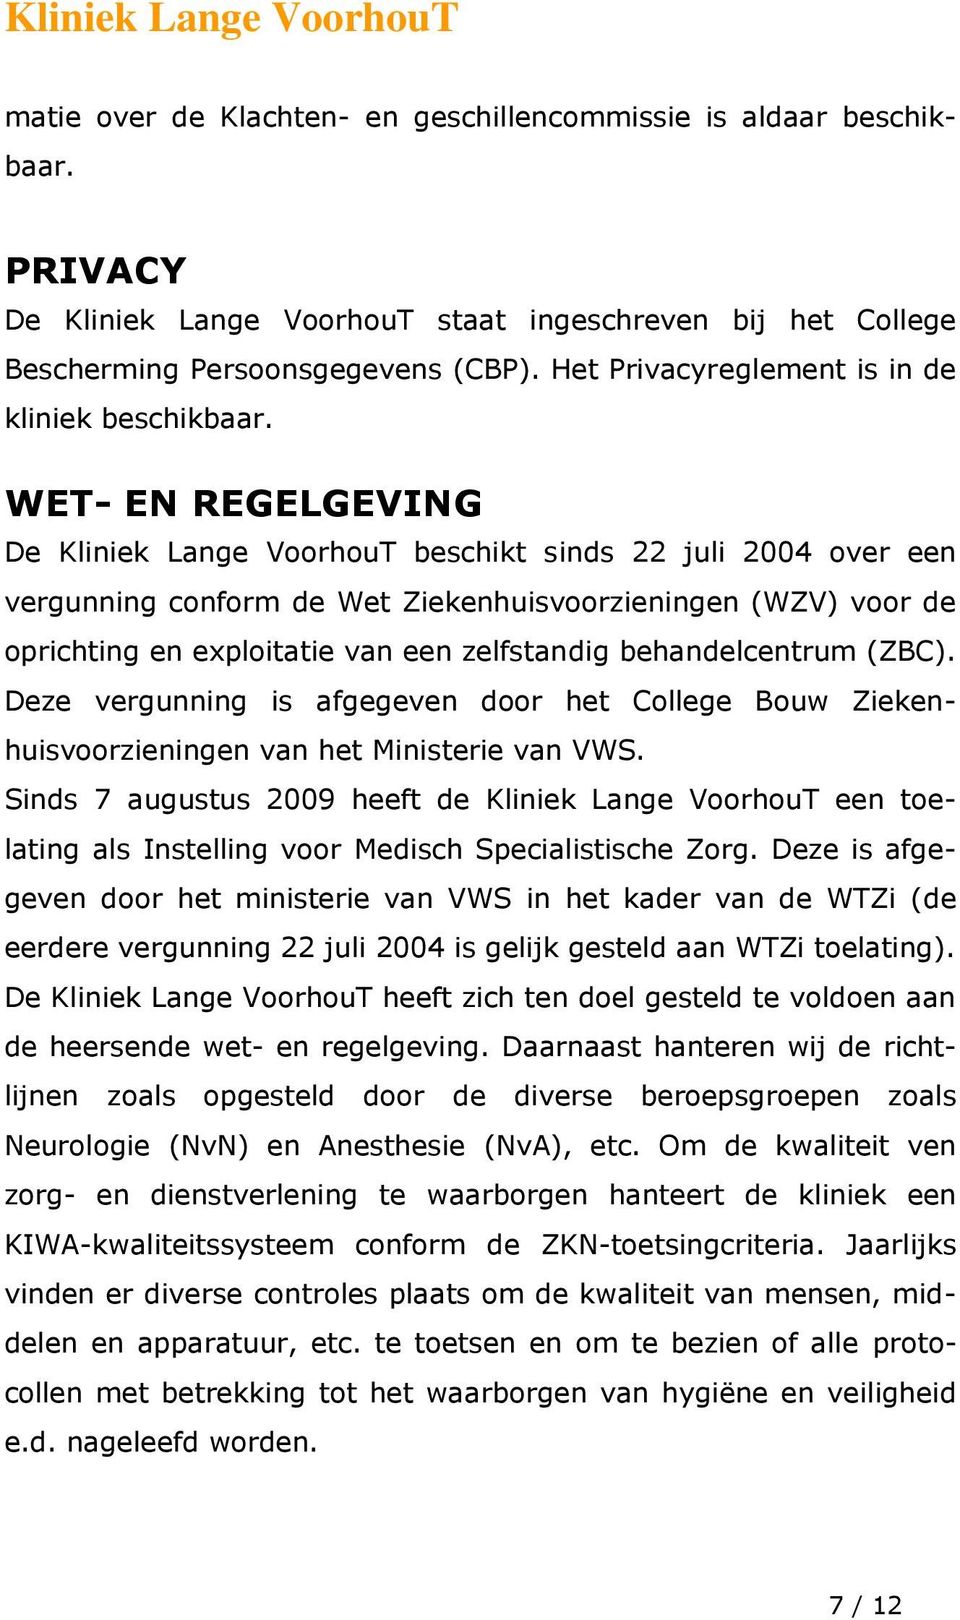 WET- EN REGELGEVING De Kliniek Lange VoorhouT beschikt sinds 22 juli 2004 over een vergunning conform de Wet Ziekenhuisvoorzieningen (WZV) voor de oprichting en exploitatie van een zelfstandig